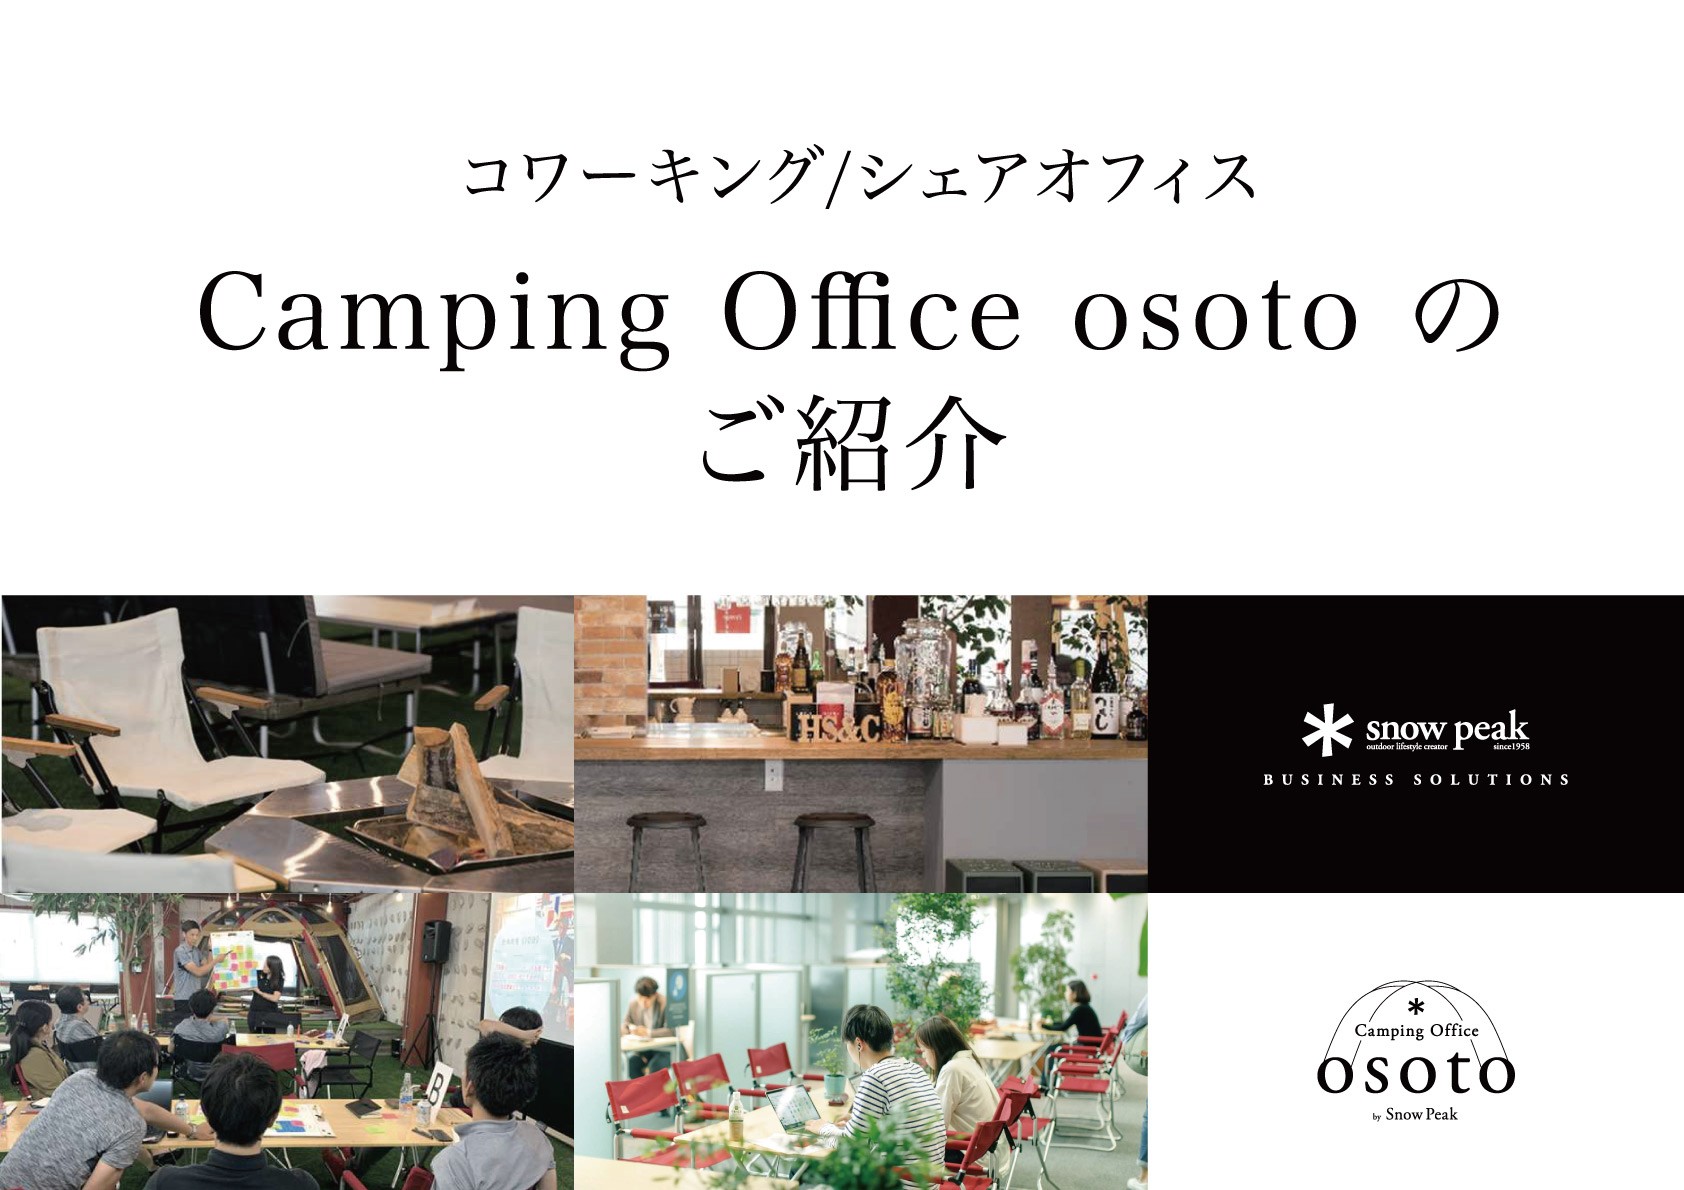 コワーキング/シェアオフィス Camping Office osoto のご紹介